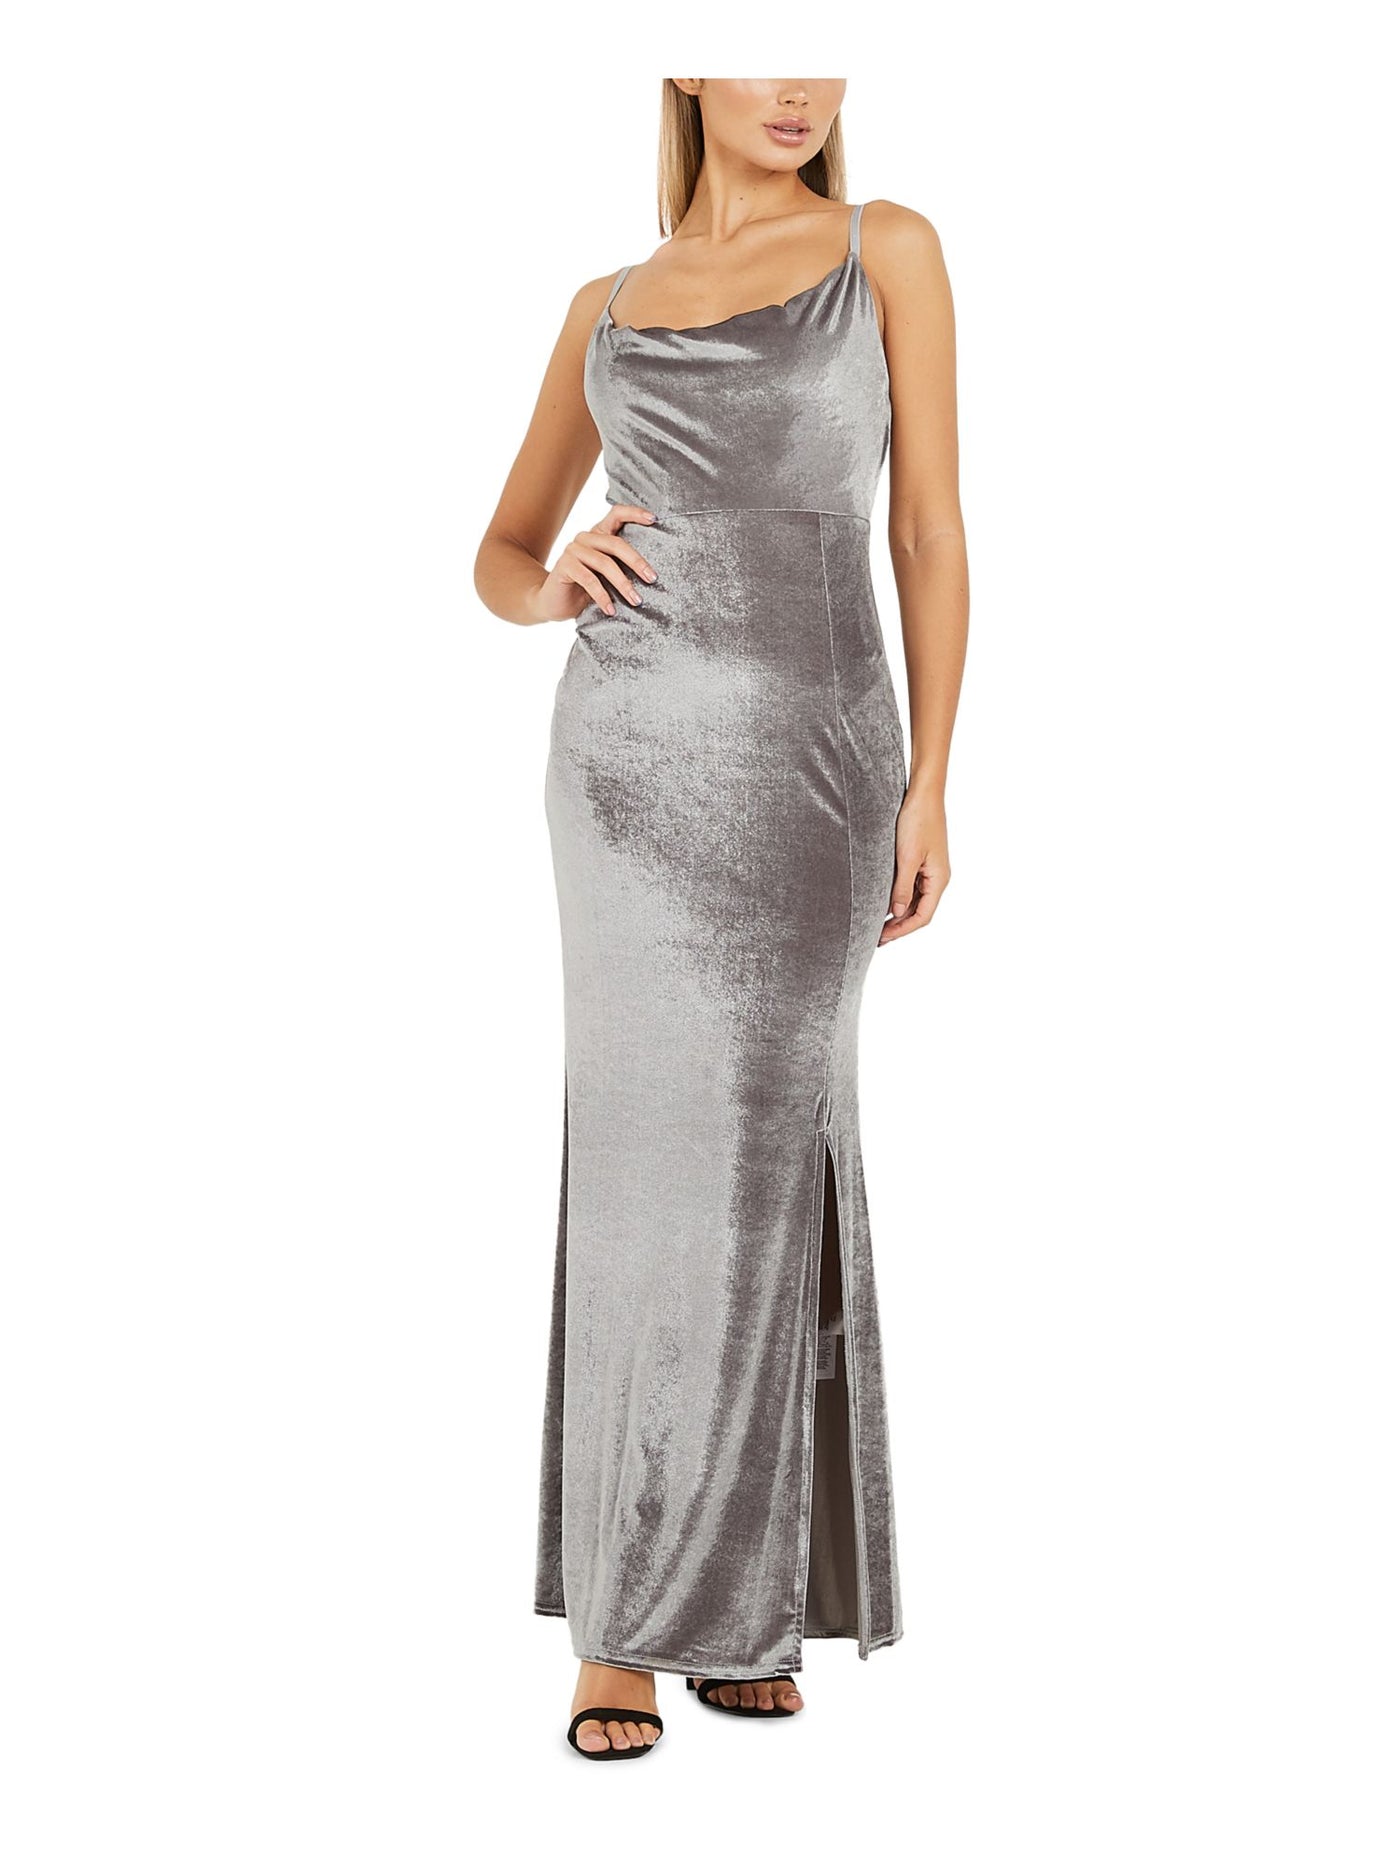 QUIZ Womens Gray Velvet Spaghetti Strap Cowl Neck Full-Length Evening Body Con Dress 12